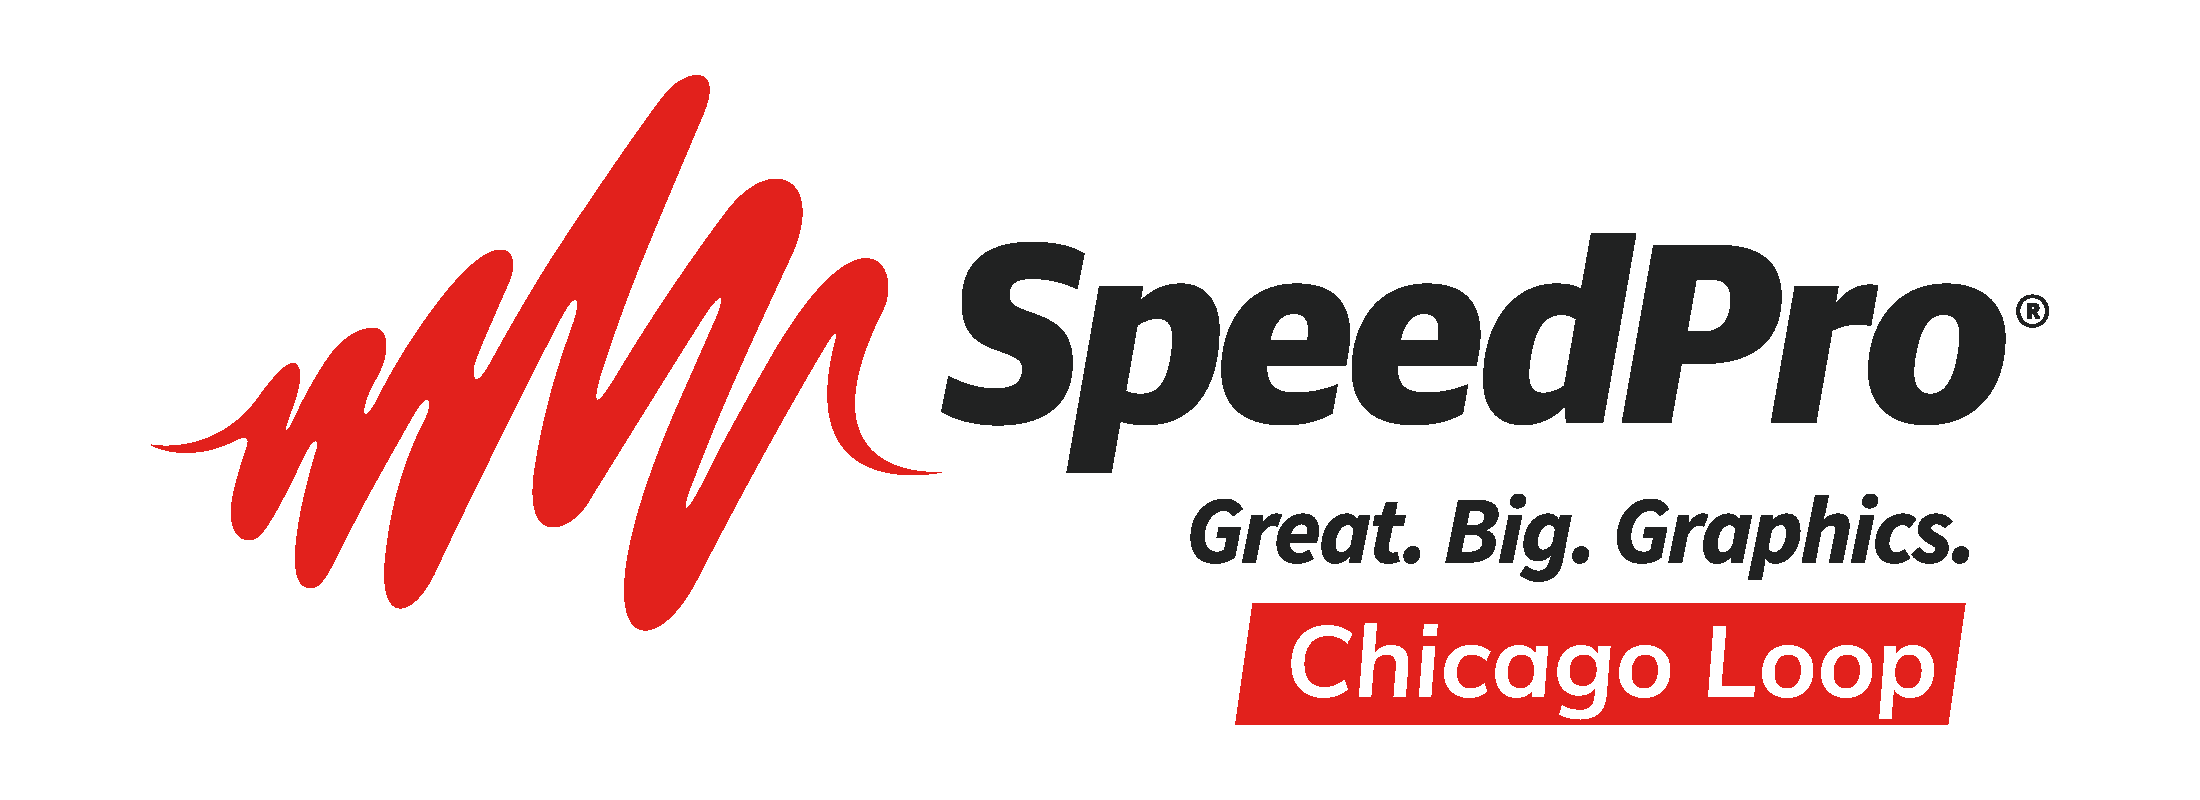 SpeedPro Chicago Loop